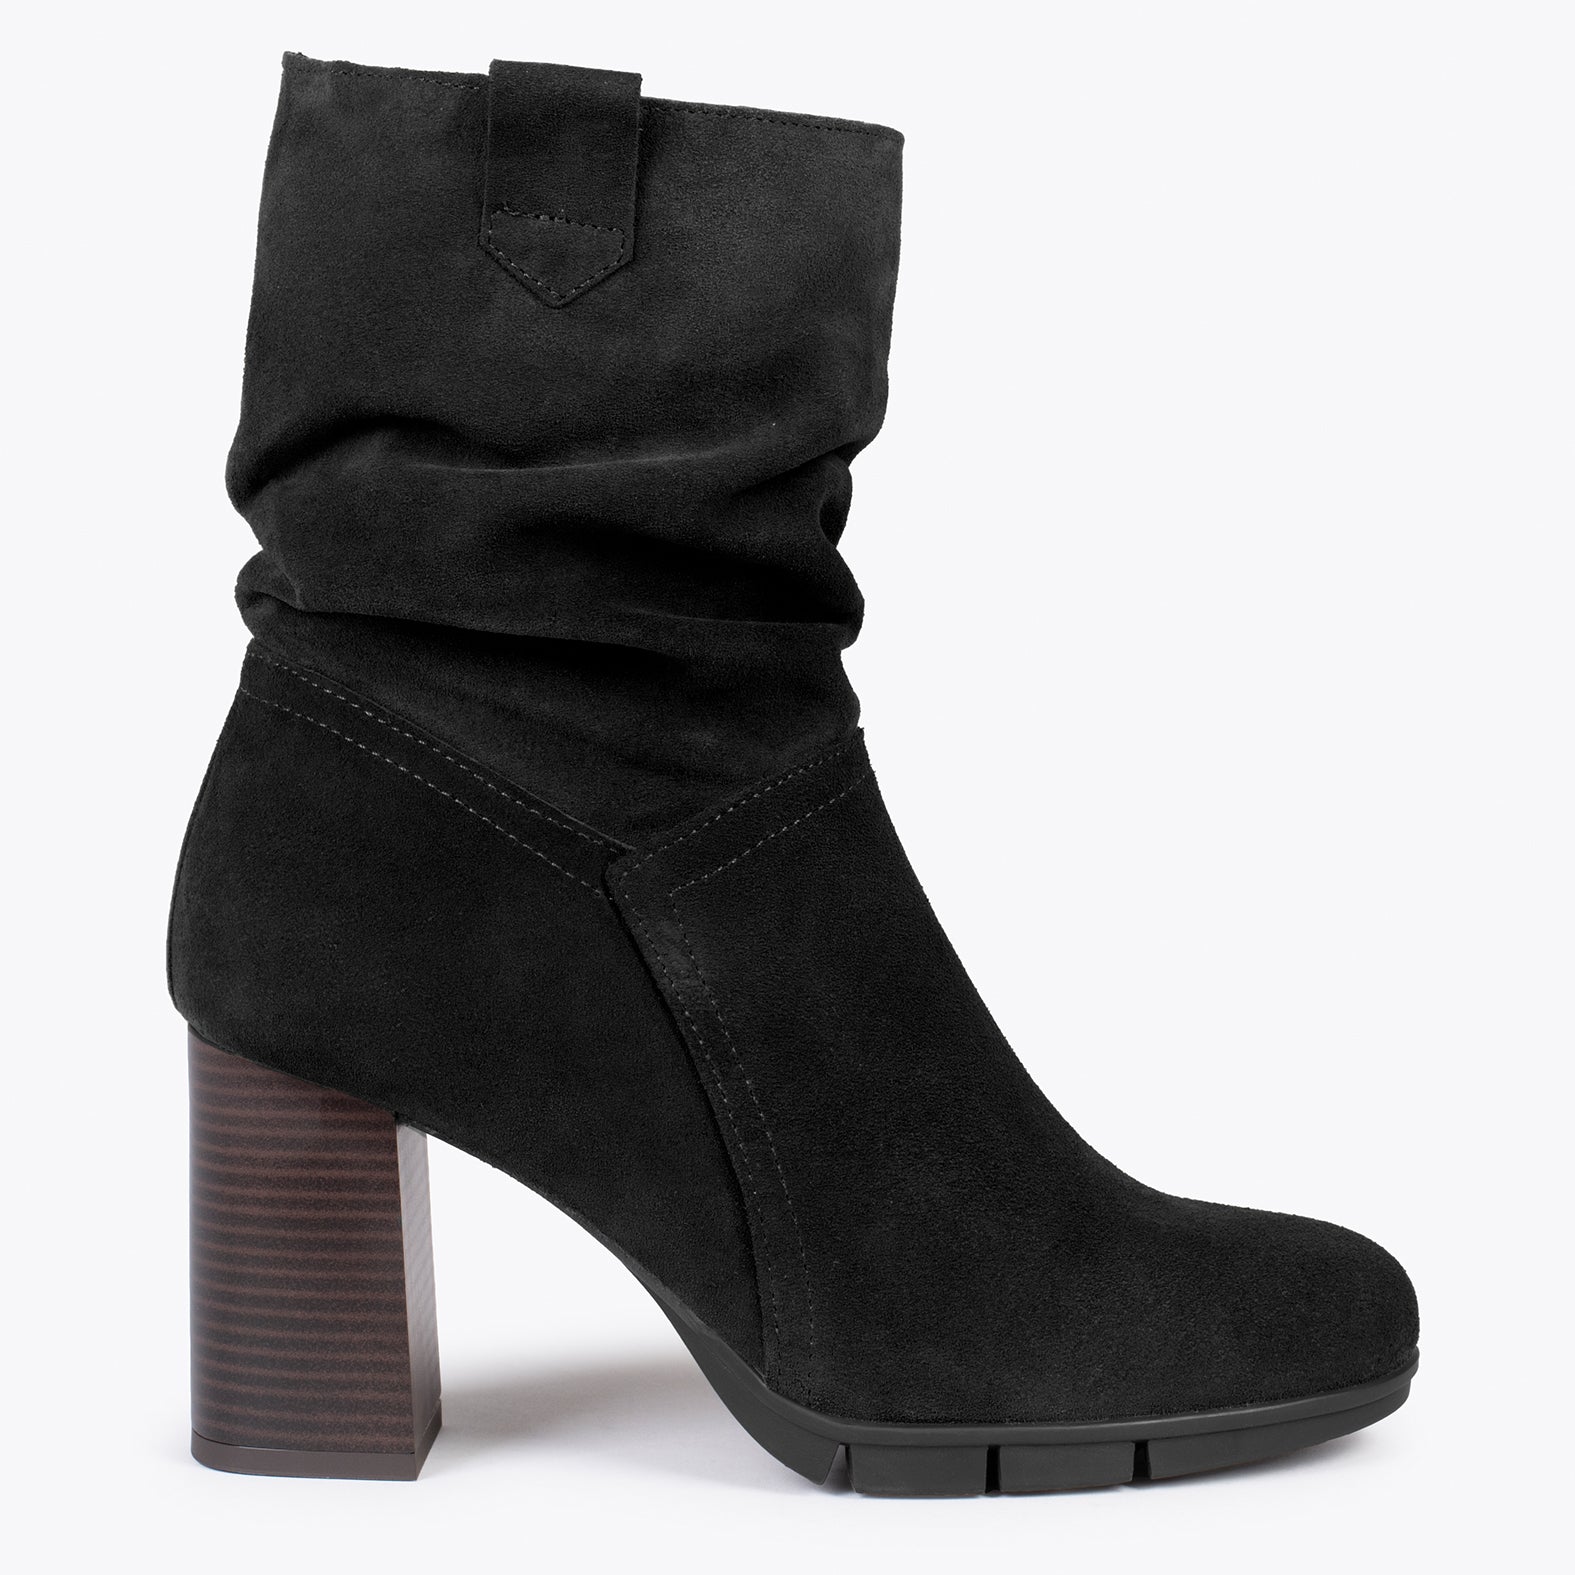 WAVE – BLACK high heel booties with zipper